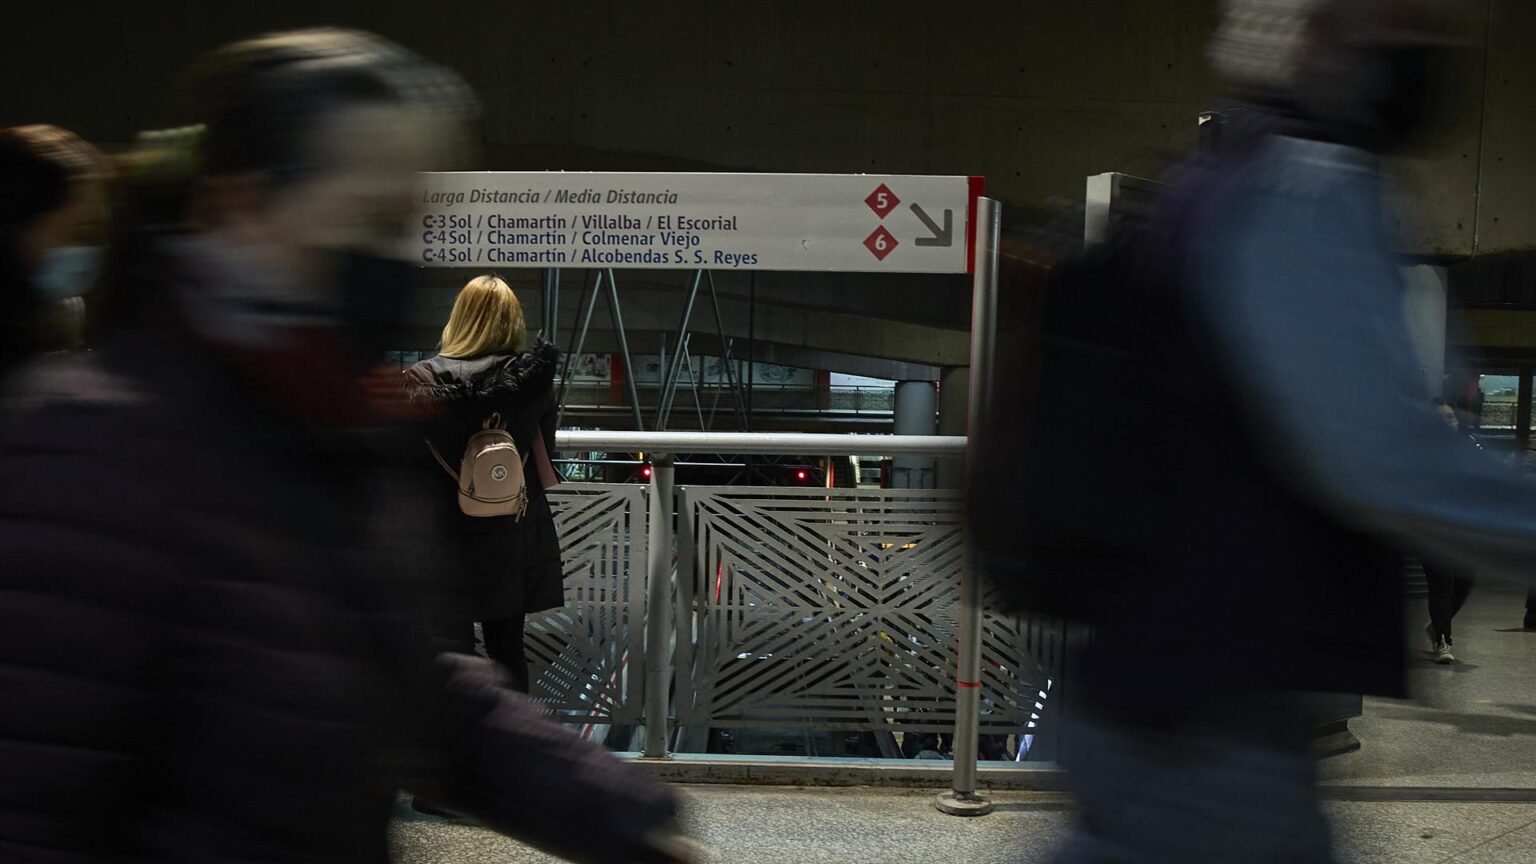 El servicio de Cercanías de Madrid recupera la normalidad tras resolver un fallo informático